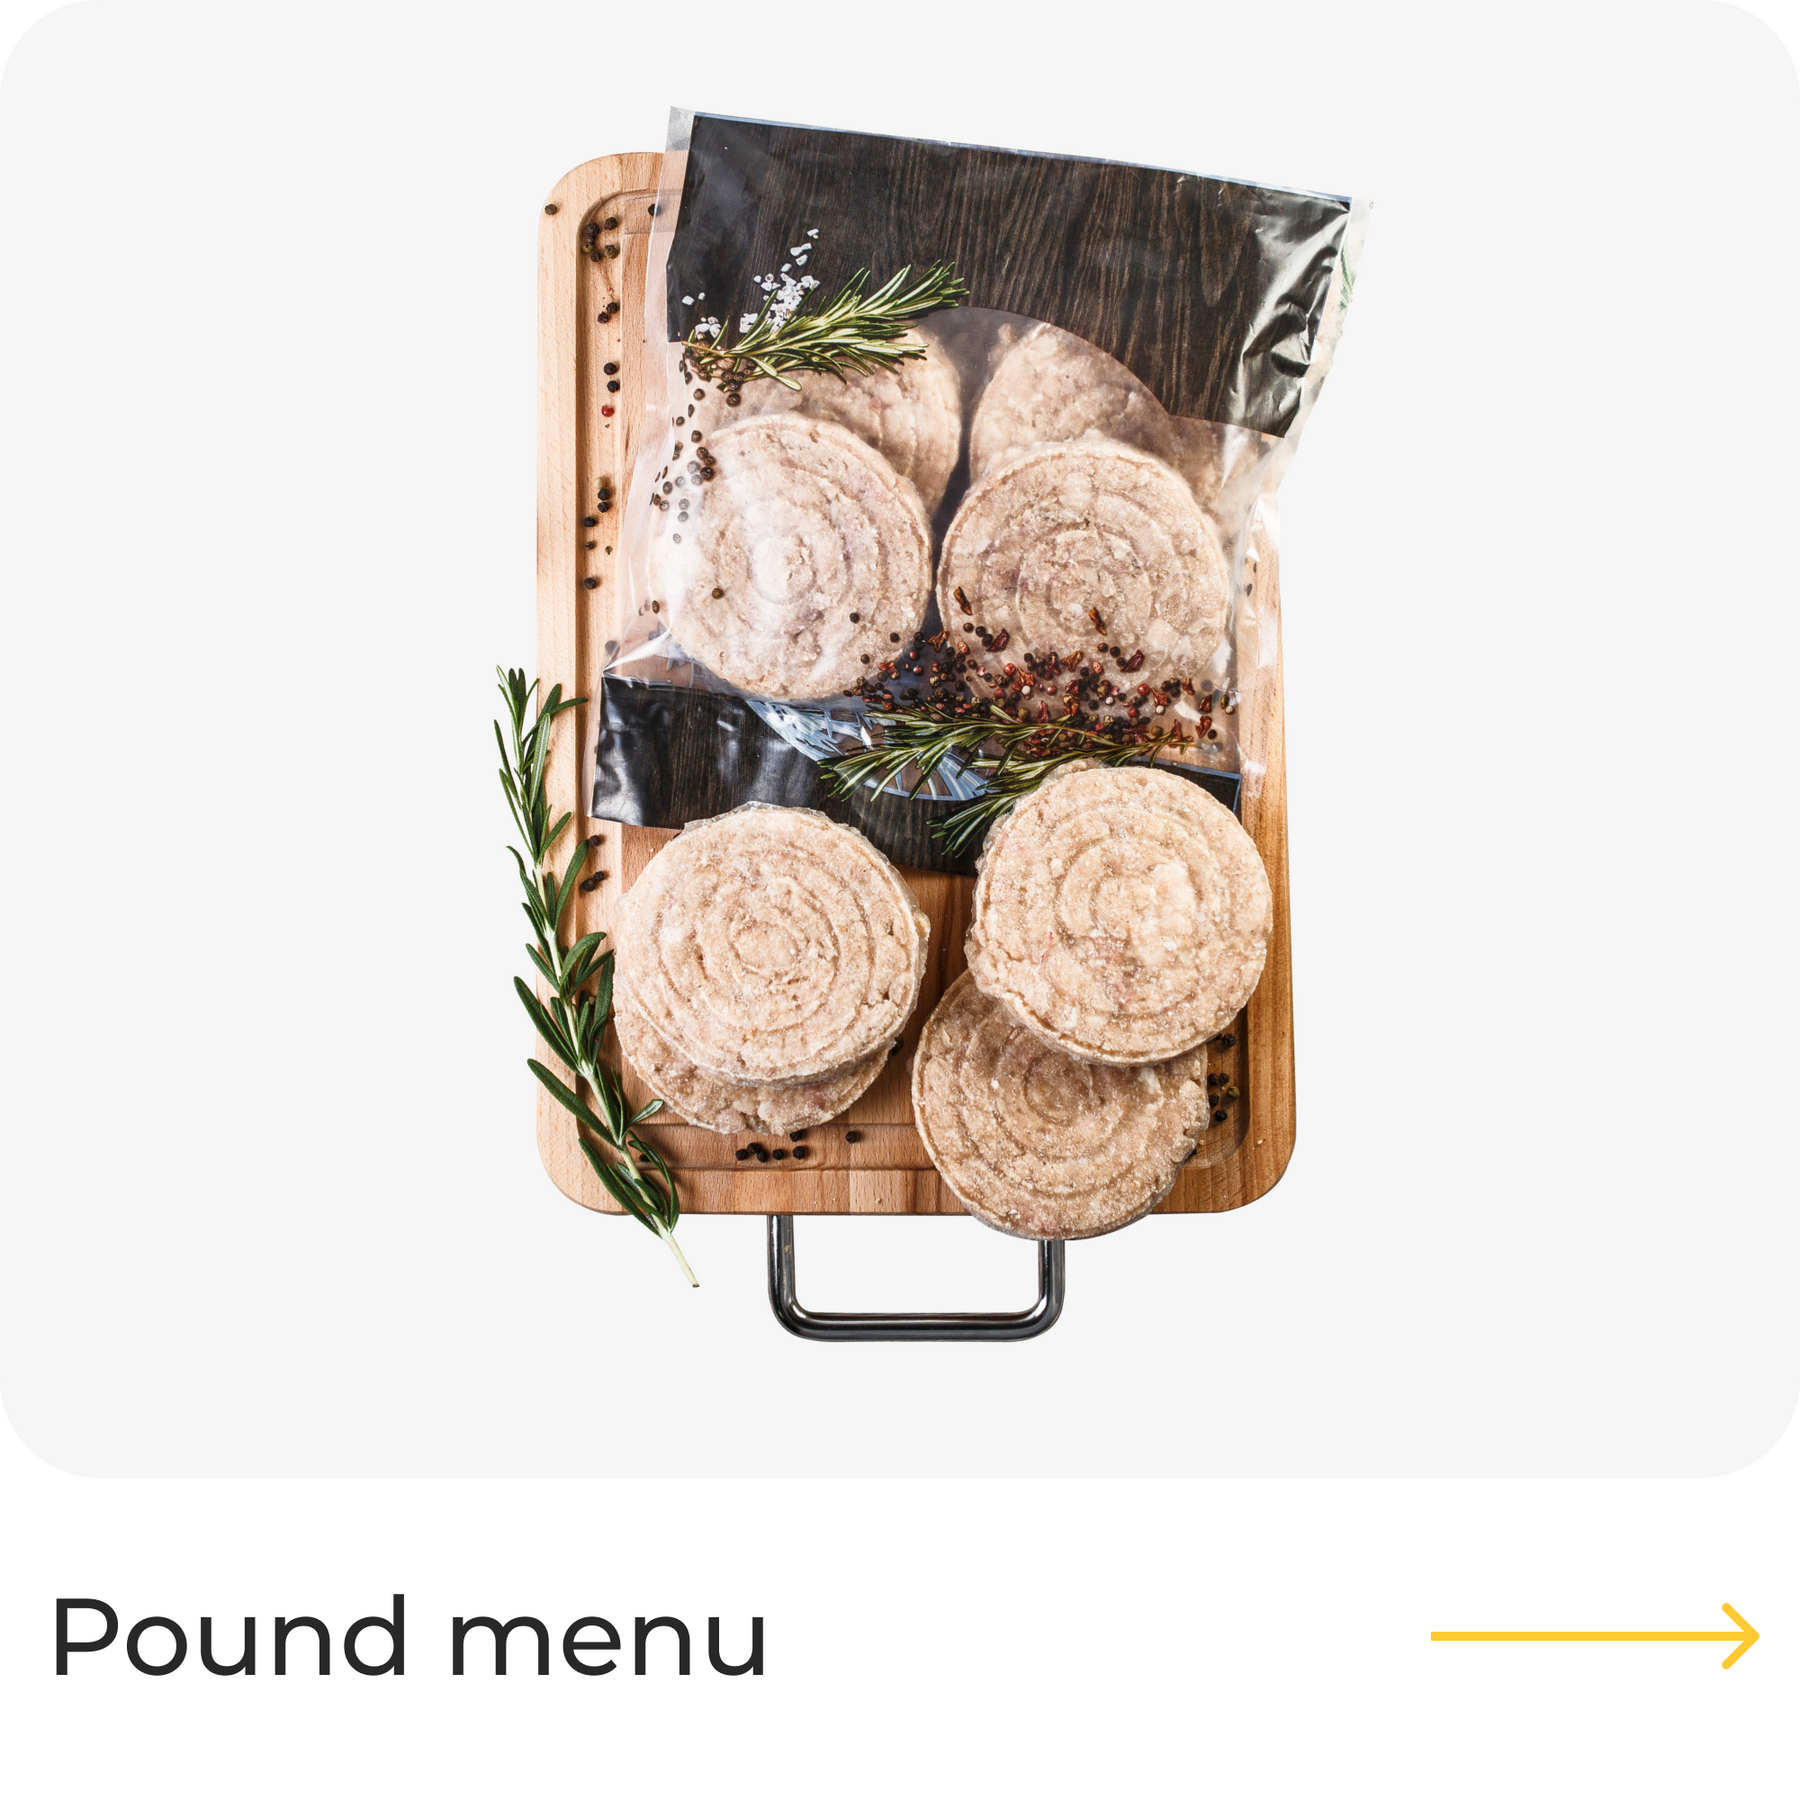 Pound menu